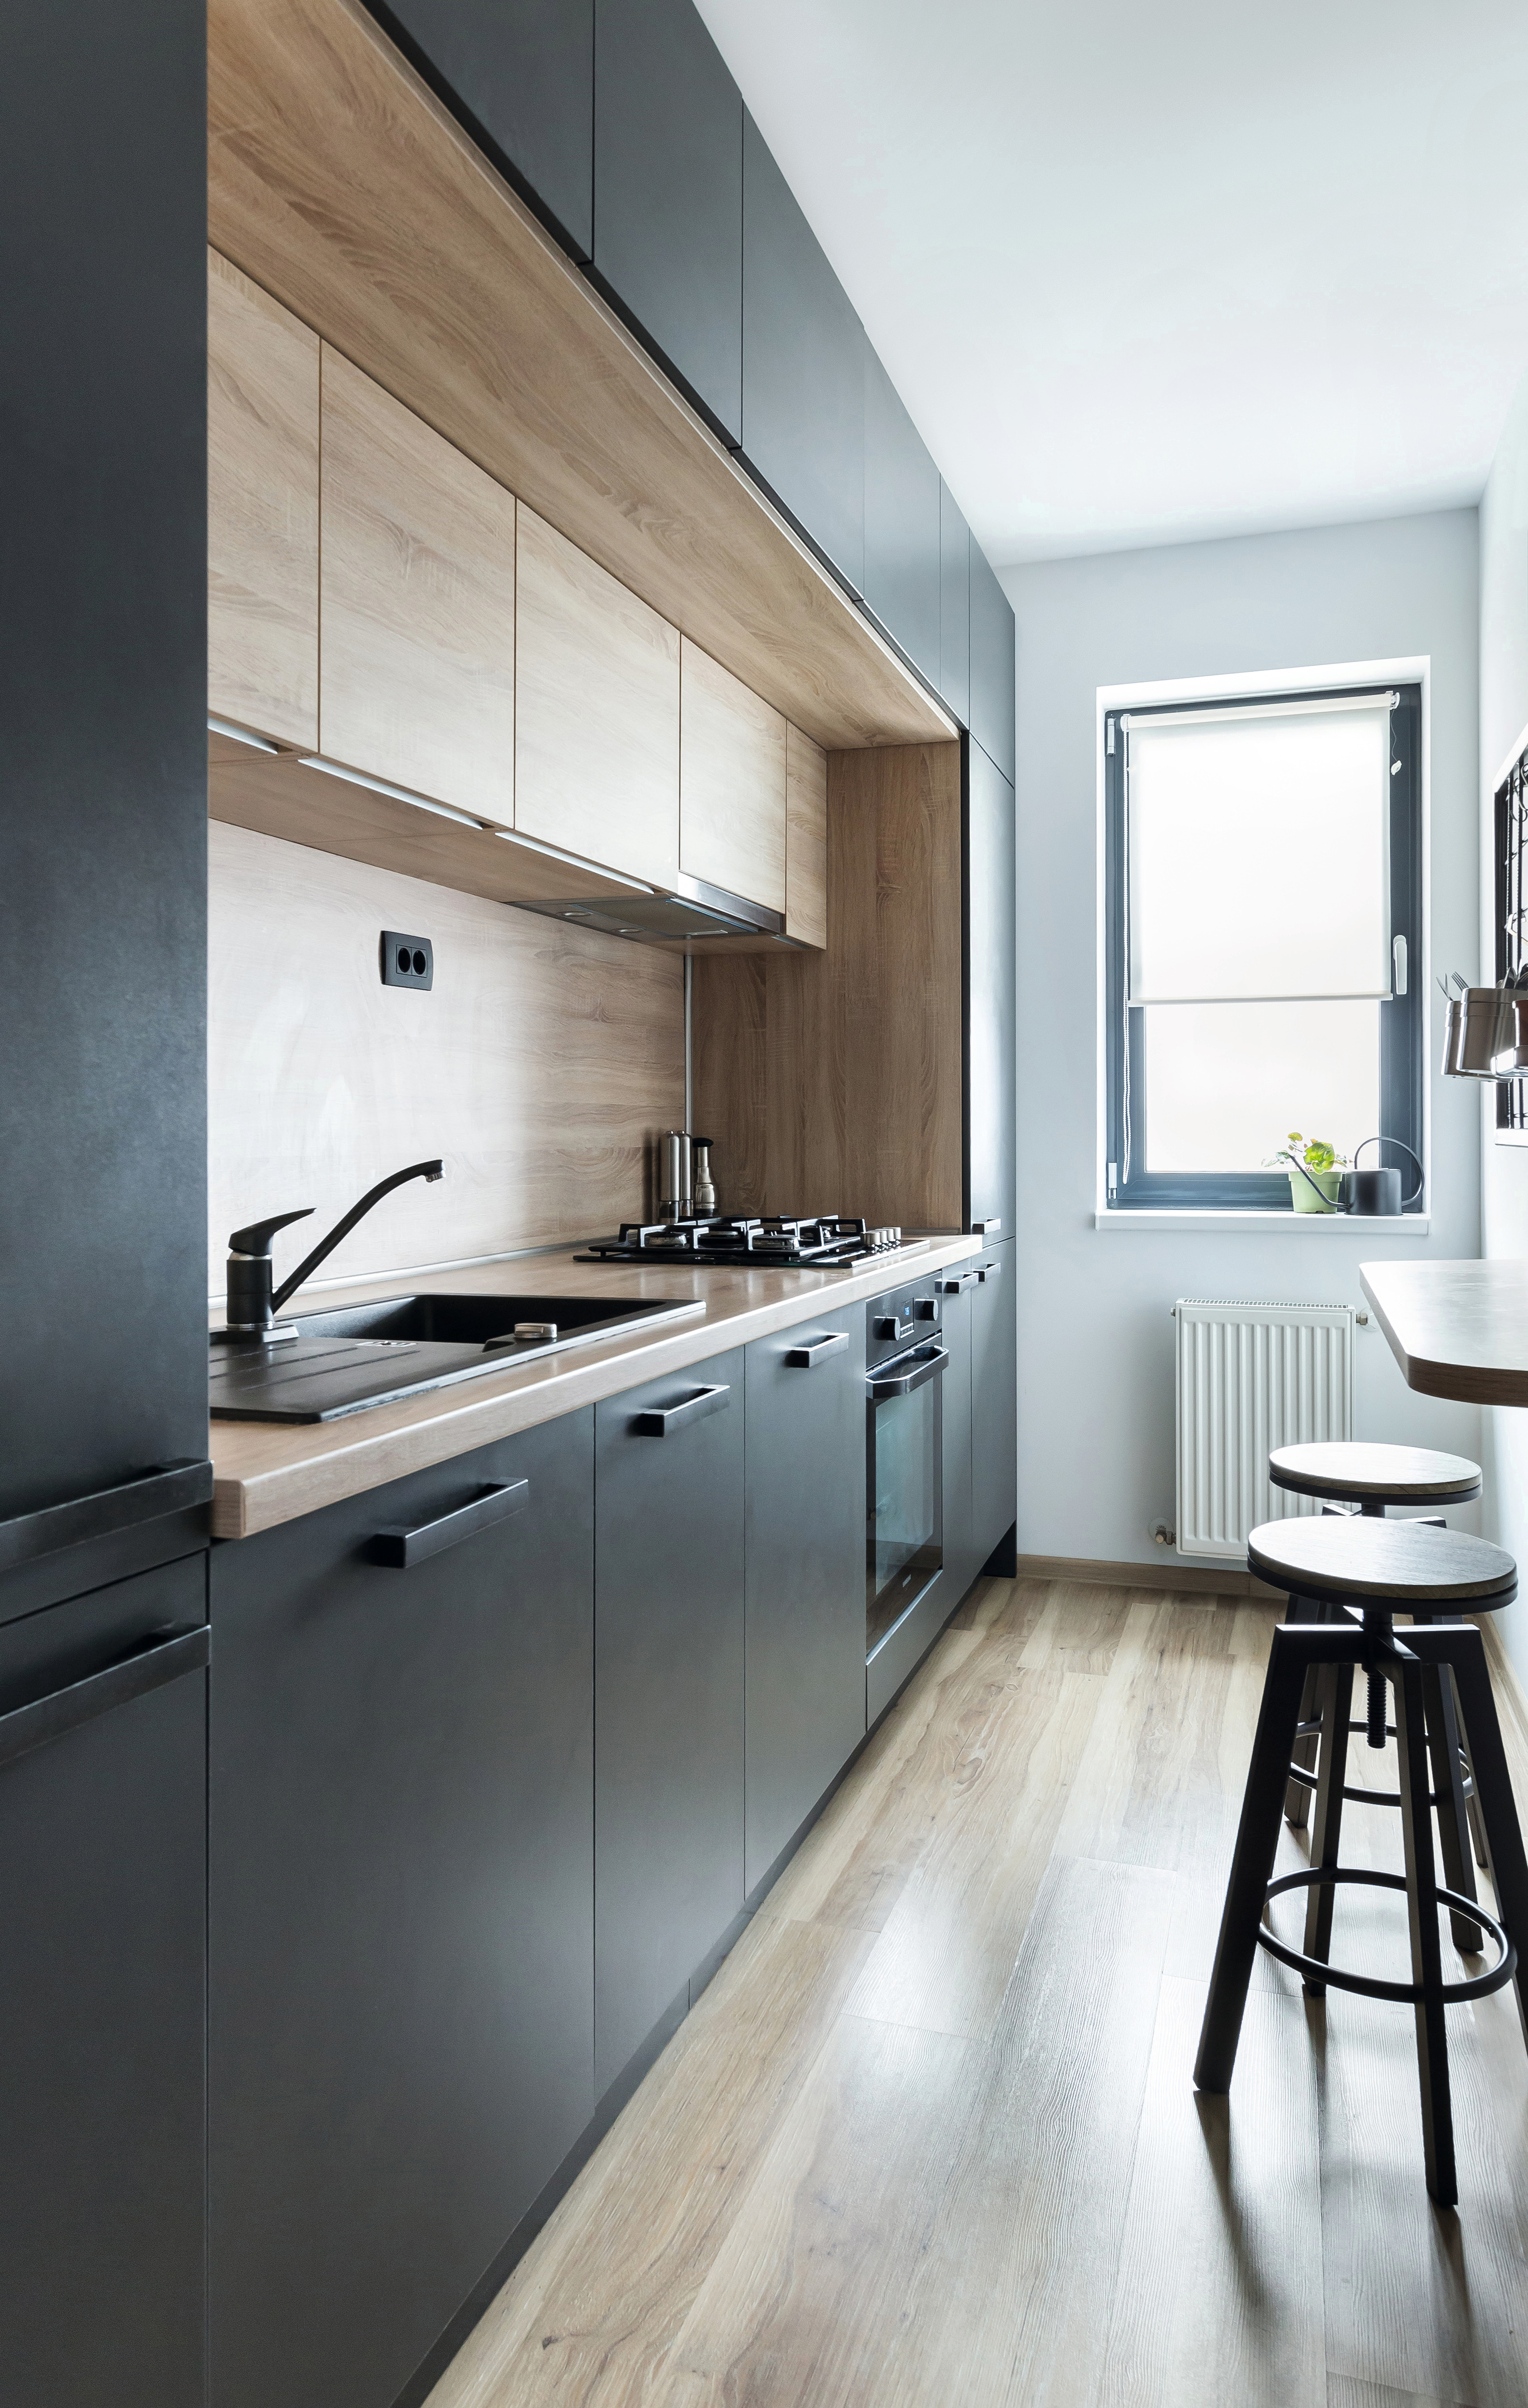 De juiste kleurkeuze en de geometrische indeling geven de keuken een moderne uitstraling.